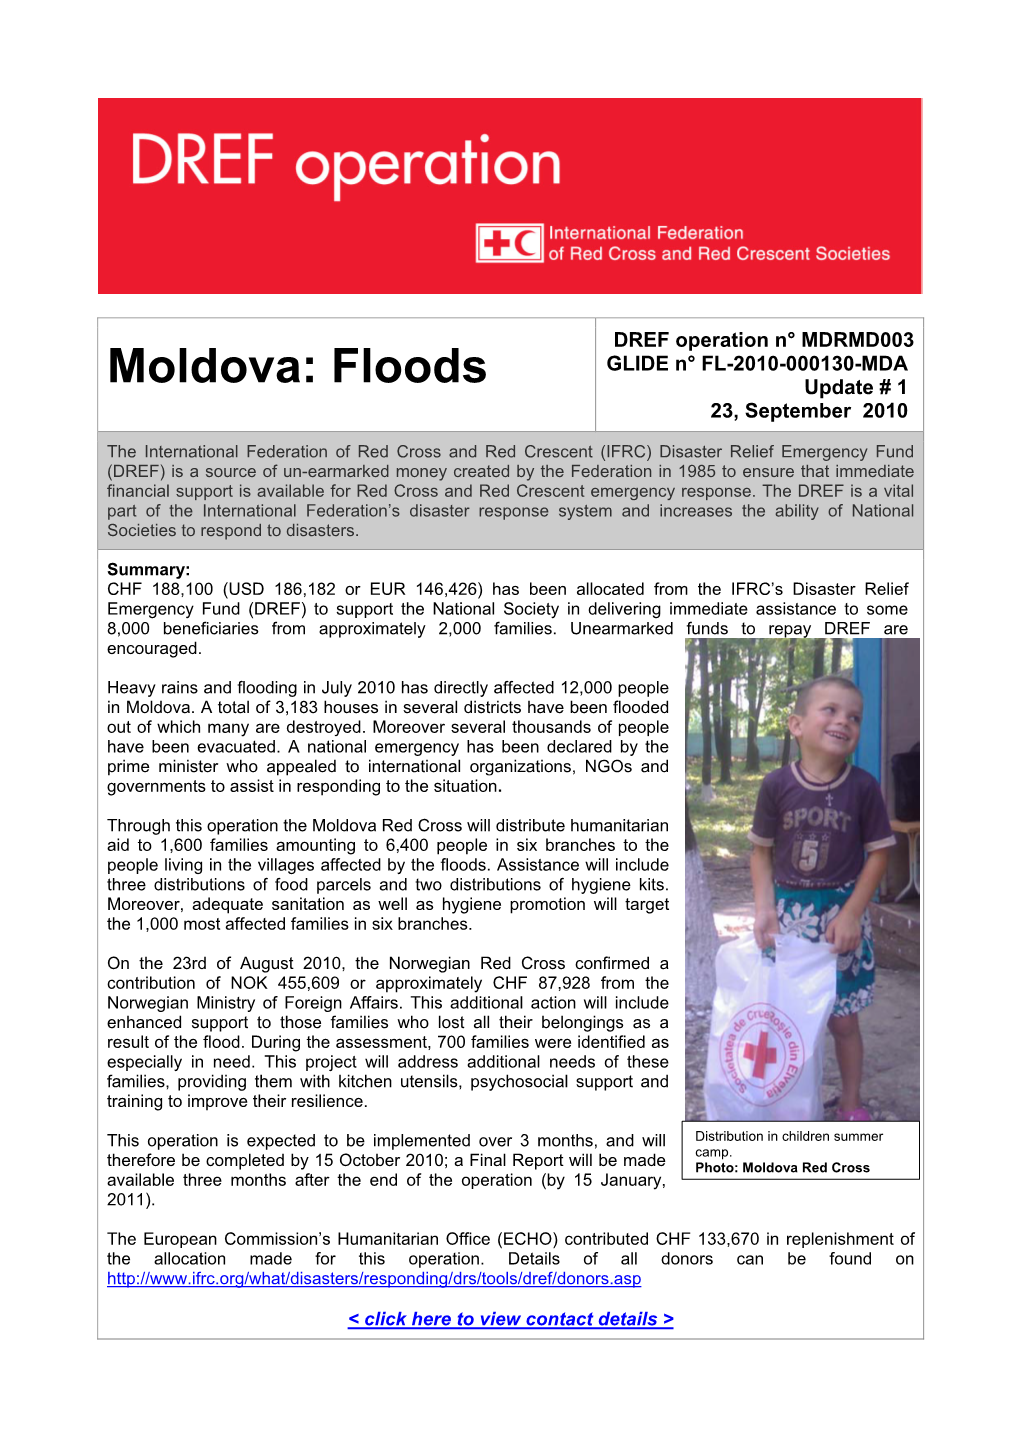 Moldova: Floods Update # 1 23, September 2010